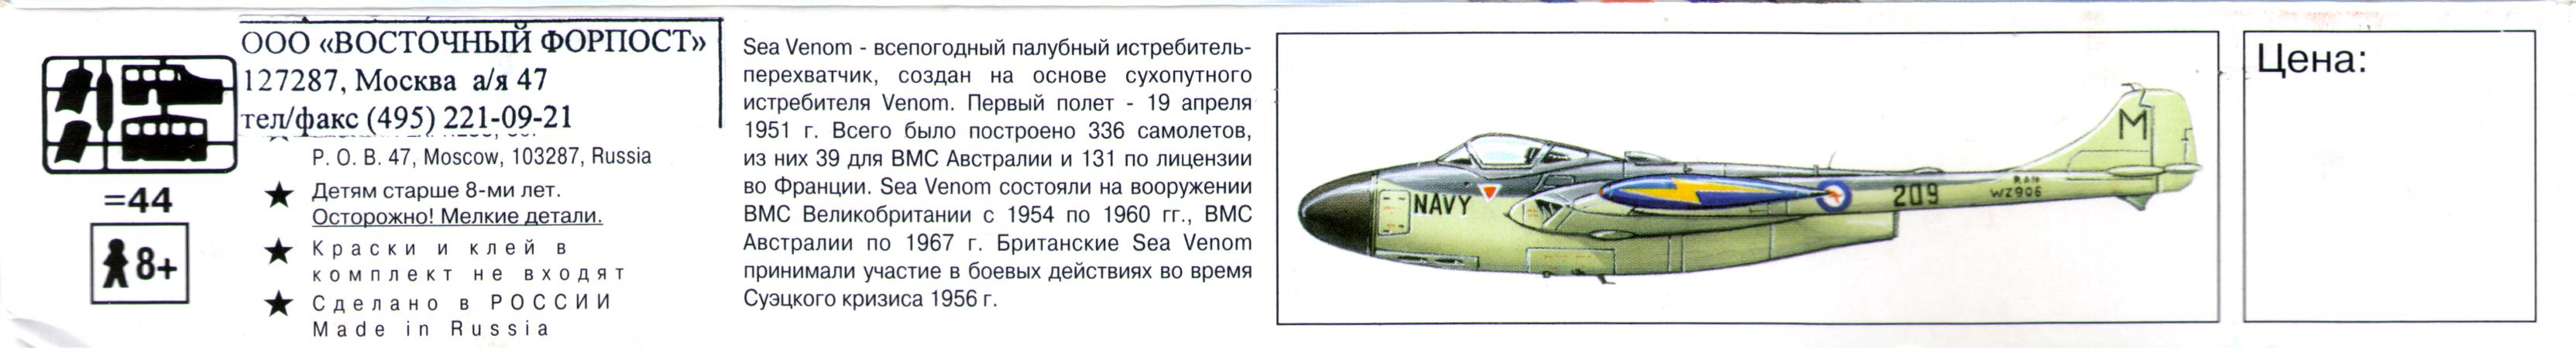  Верх коробки Eastern Express 72225 Navy Fighter DH112 Sea Venom